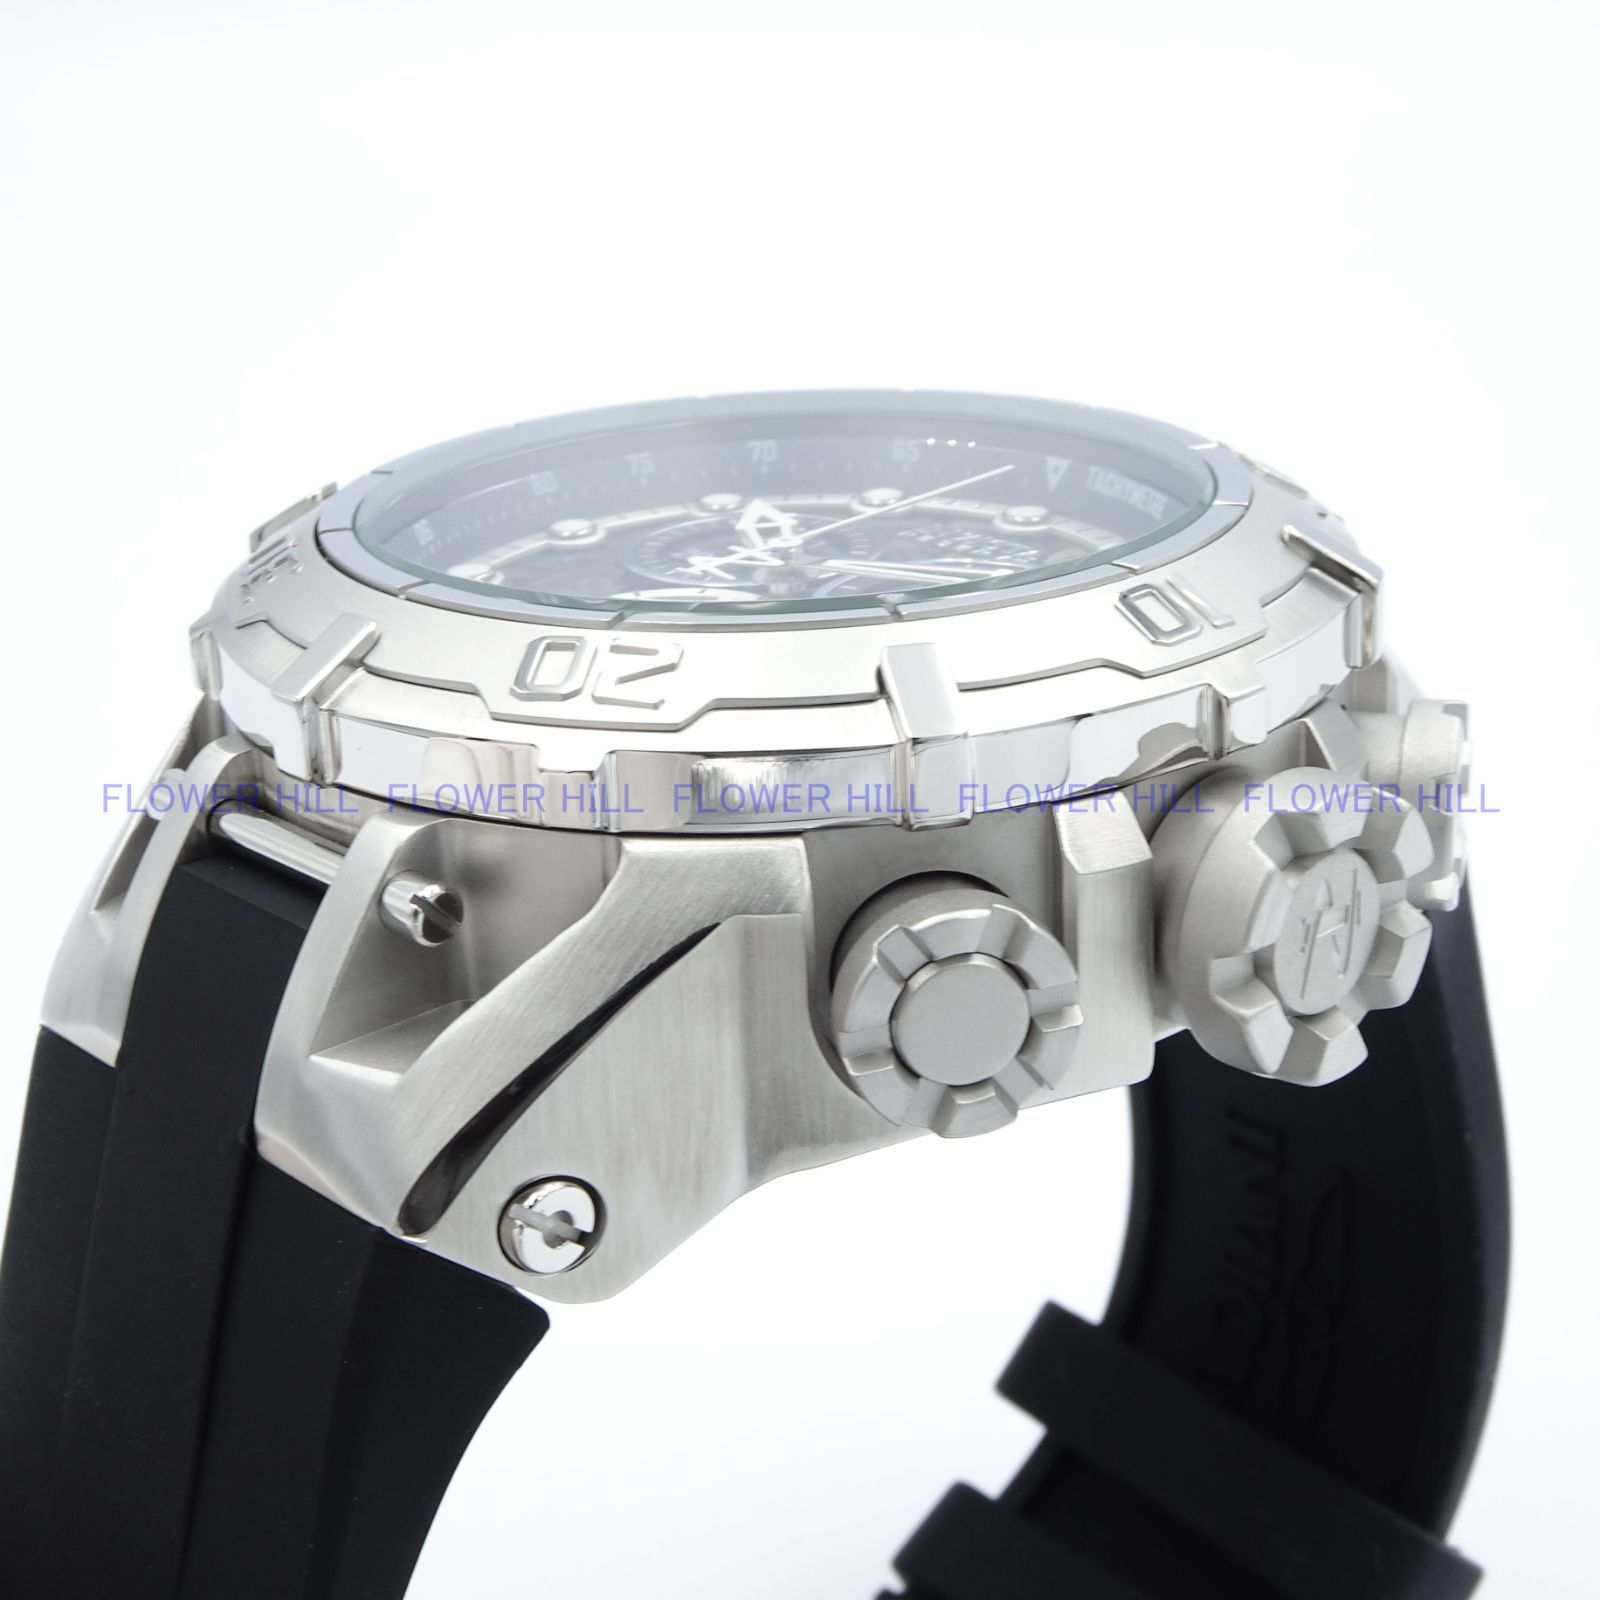 INVICTA インビクタ 腕時計 メンズ クォーツ スイスETAムーブメント クロノグラフ SUBAQUA 45261 スチール・ブラック  シリコンバンド